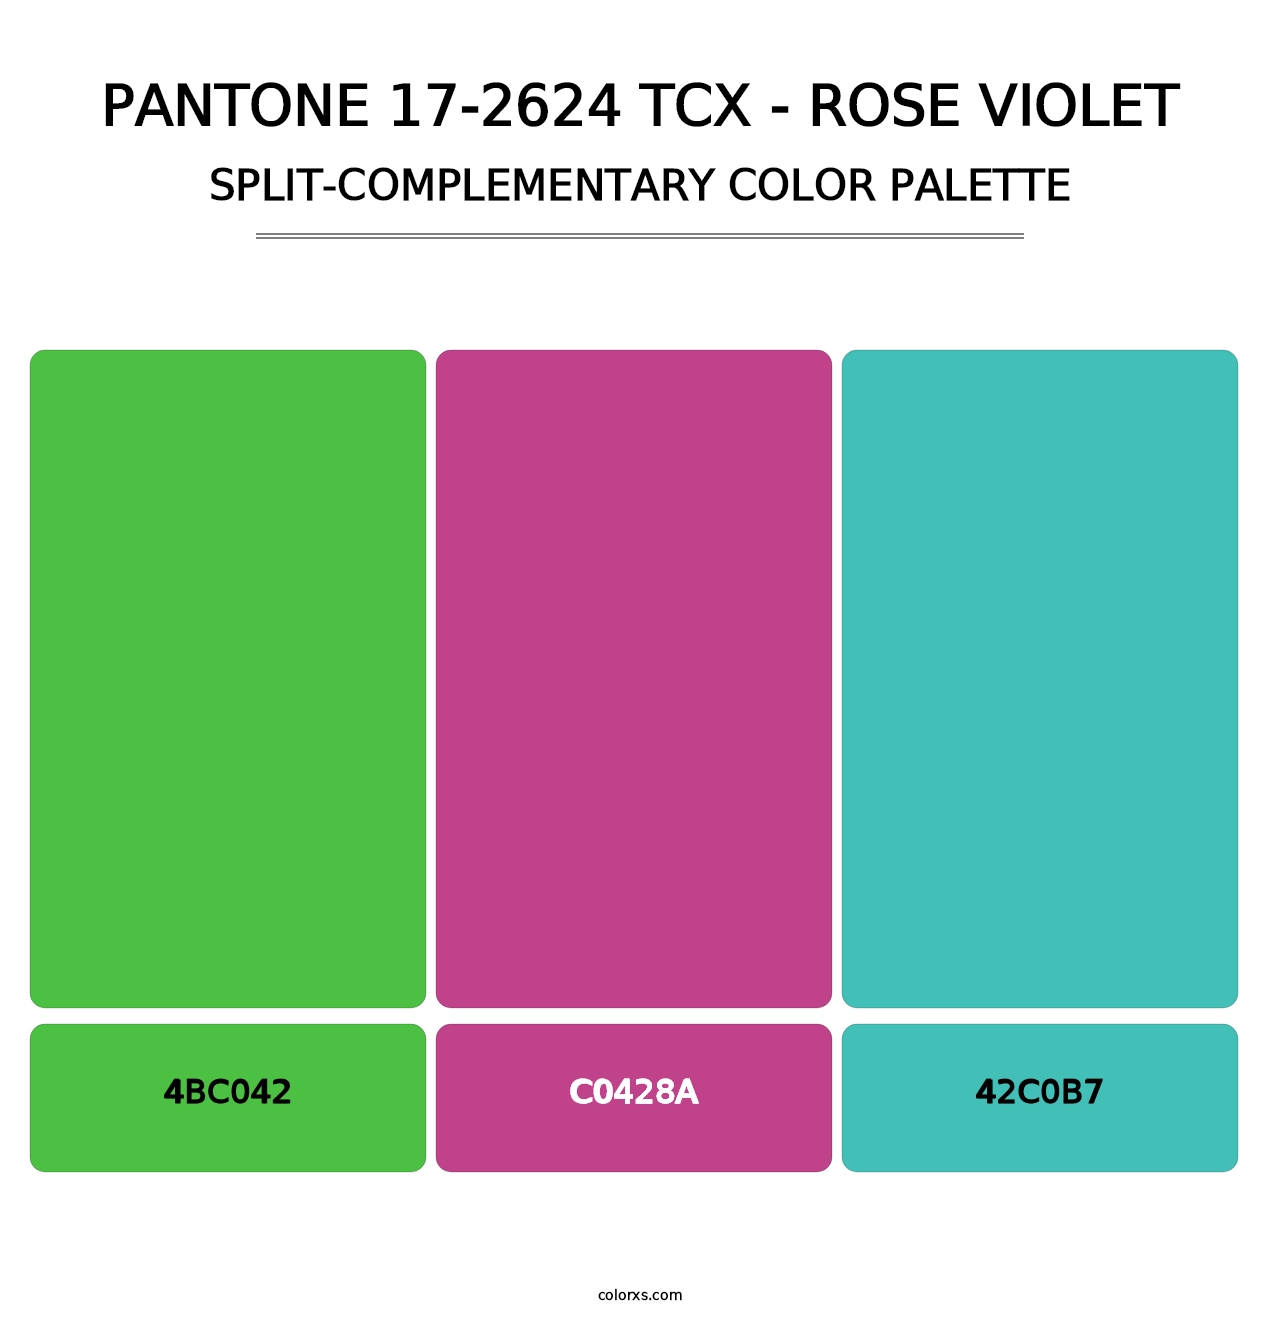 PANTONE 17-2624 TCX - Rose Violet - Split-Complementary Color Palette